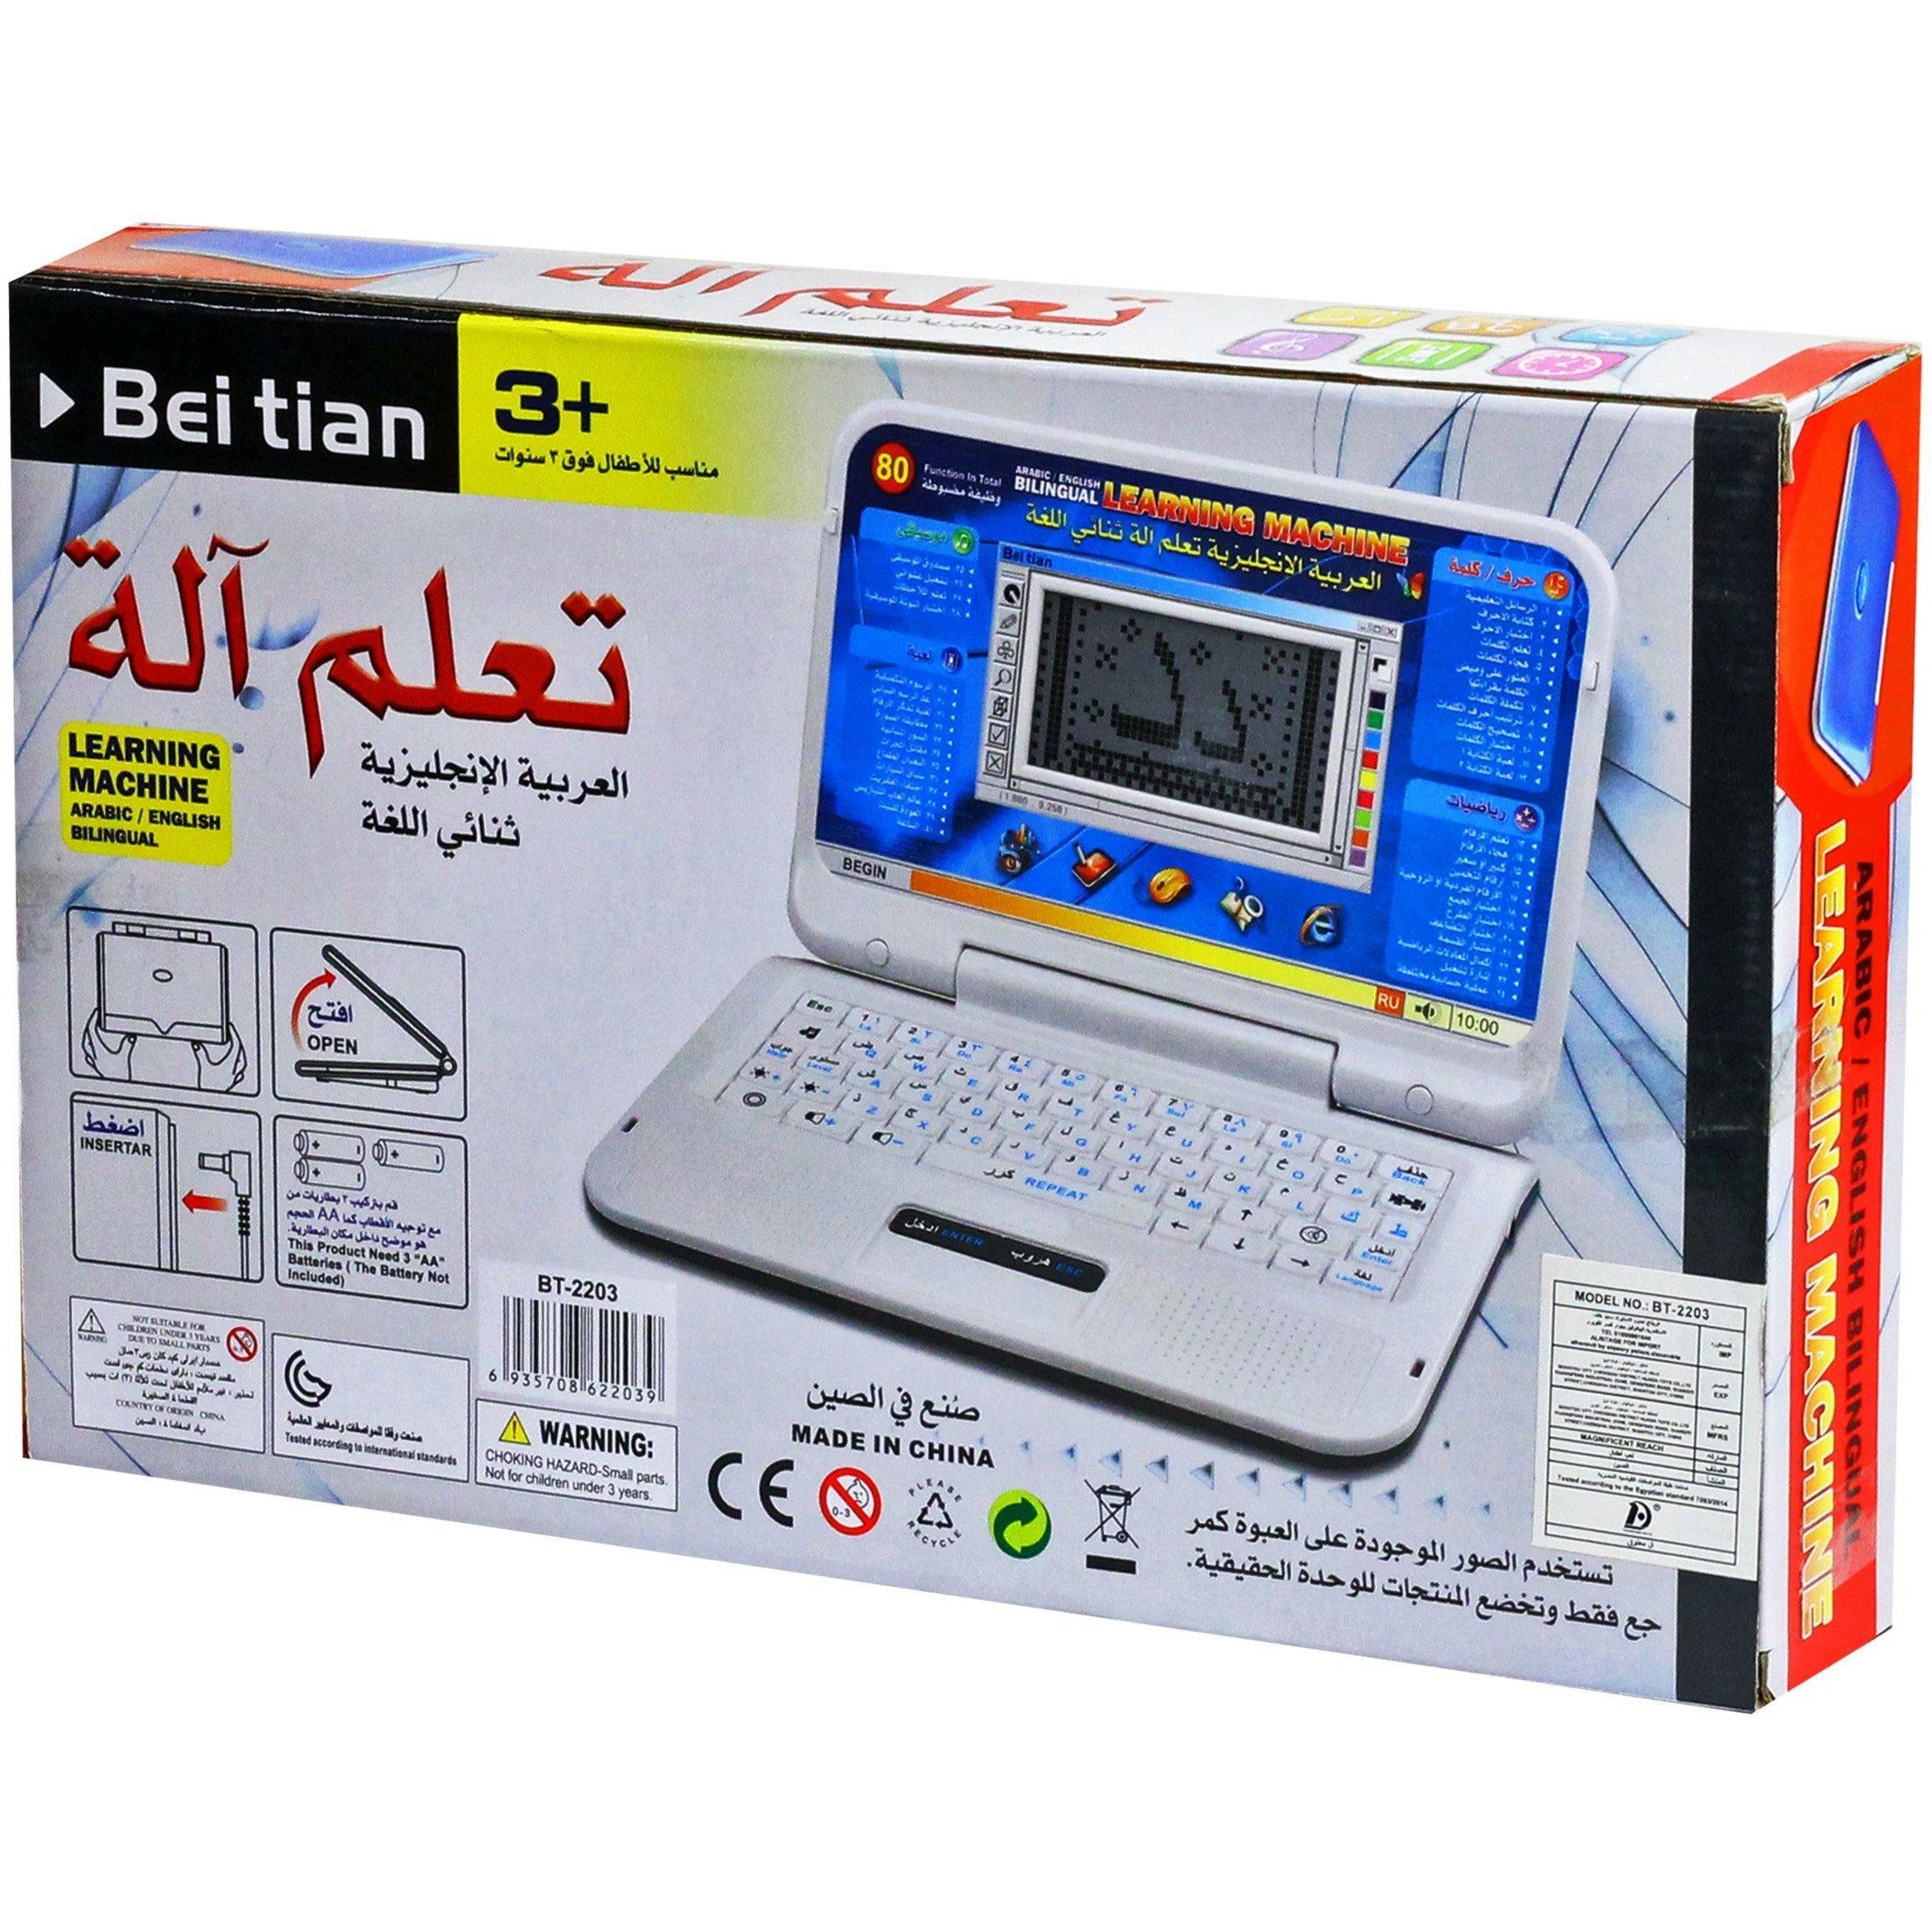 Arabic / English Educational Laptop Learning Machine - BumbleToys - 5-7 Years, Boys, Electronic Learning, Girls, Toy Land